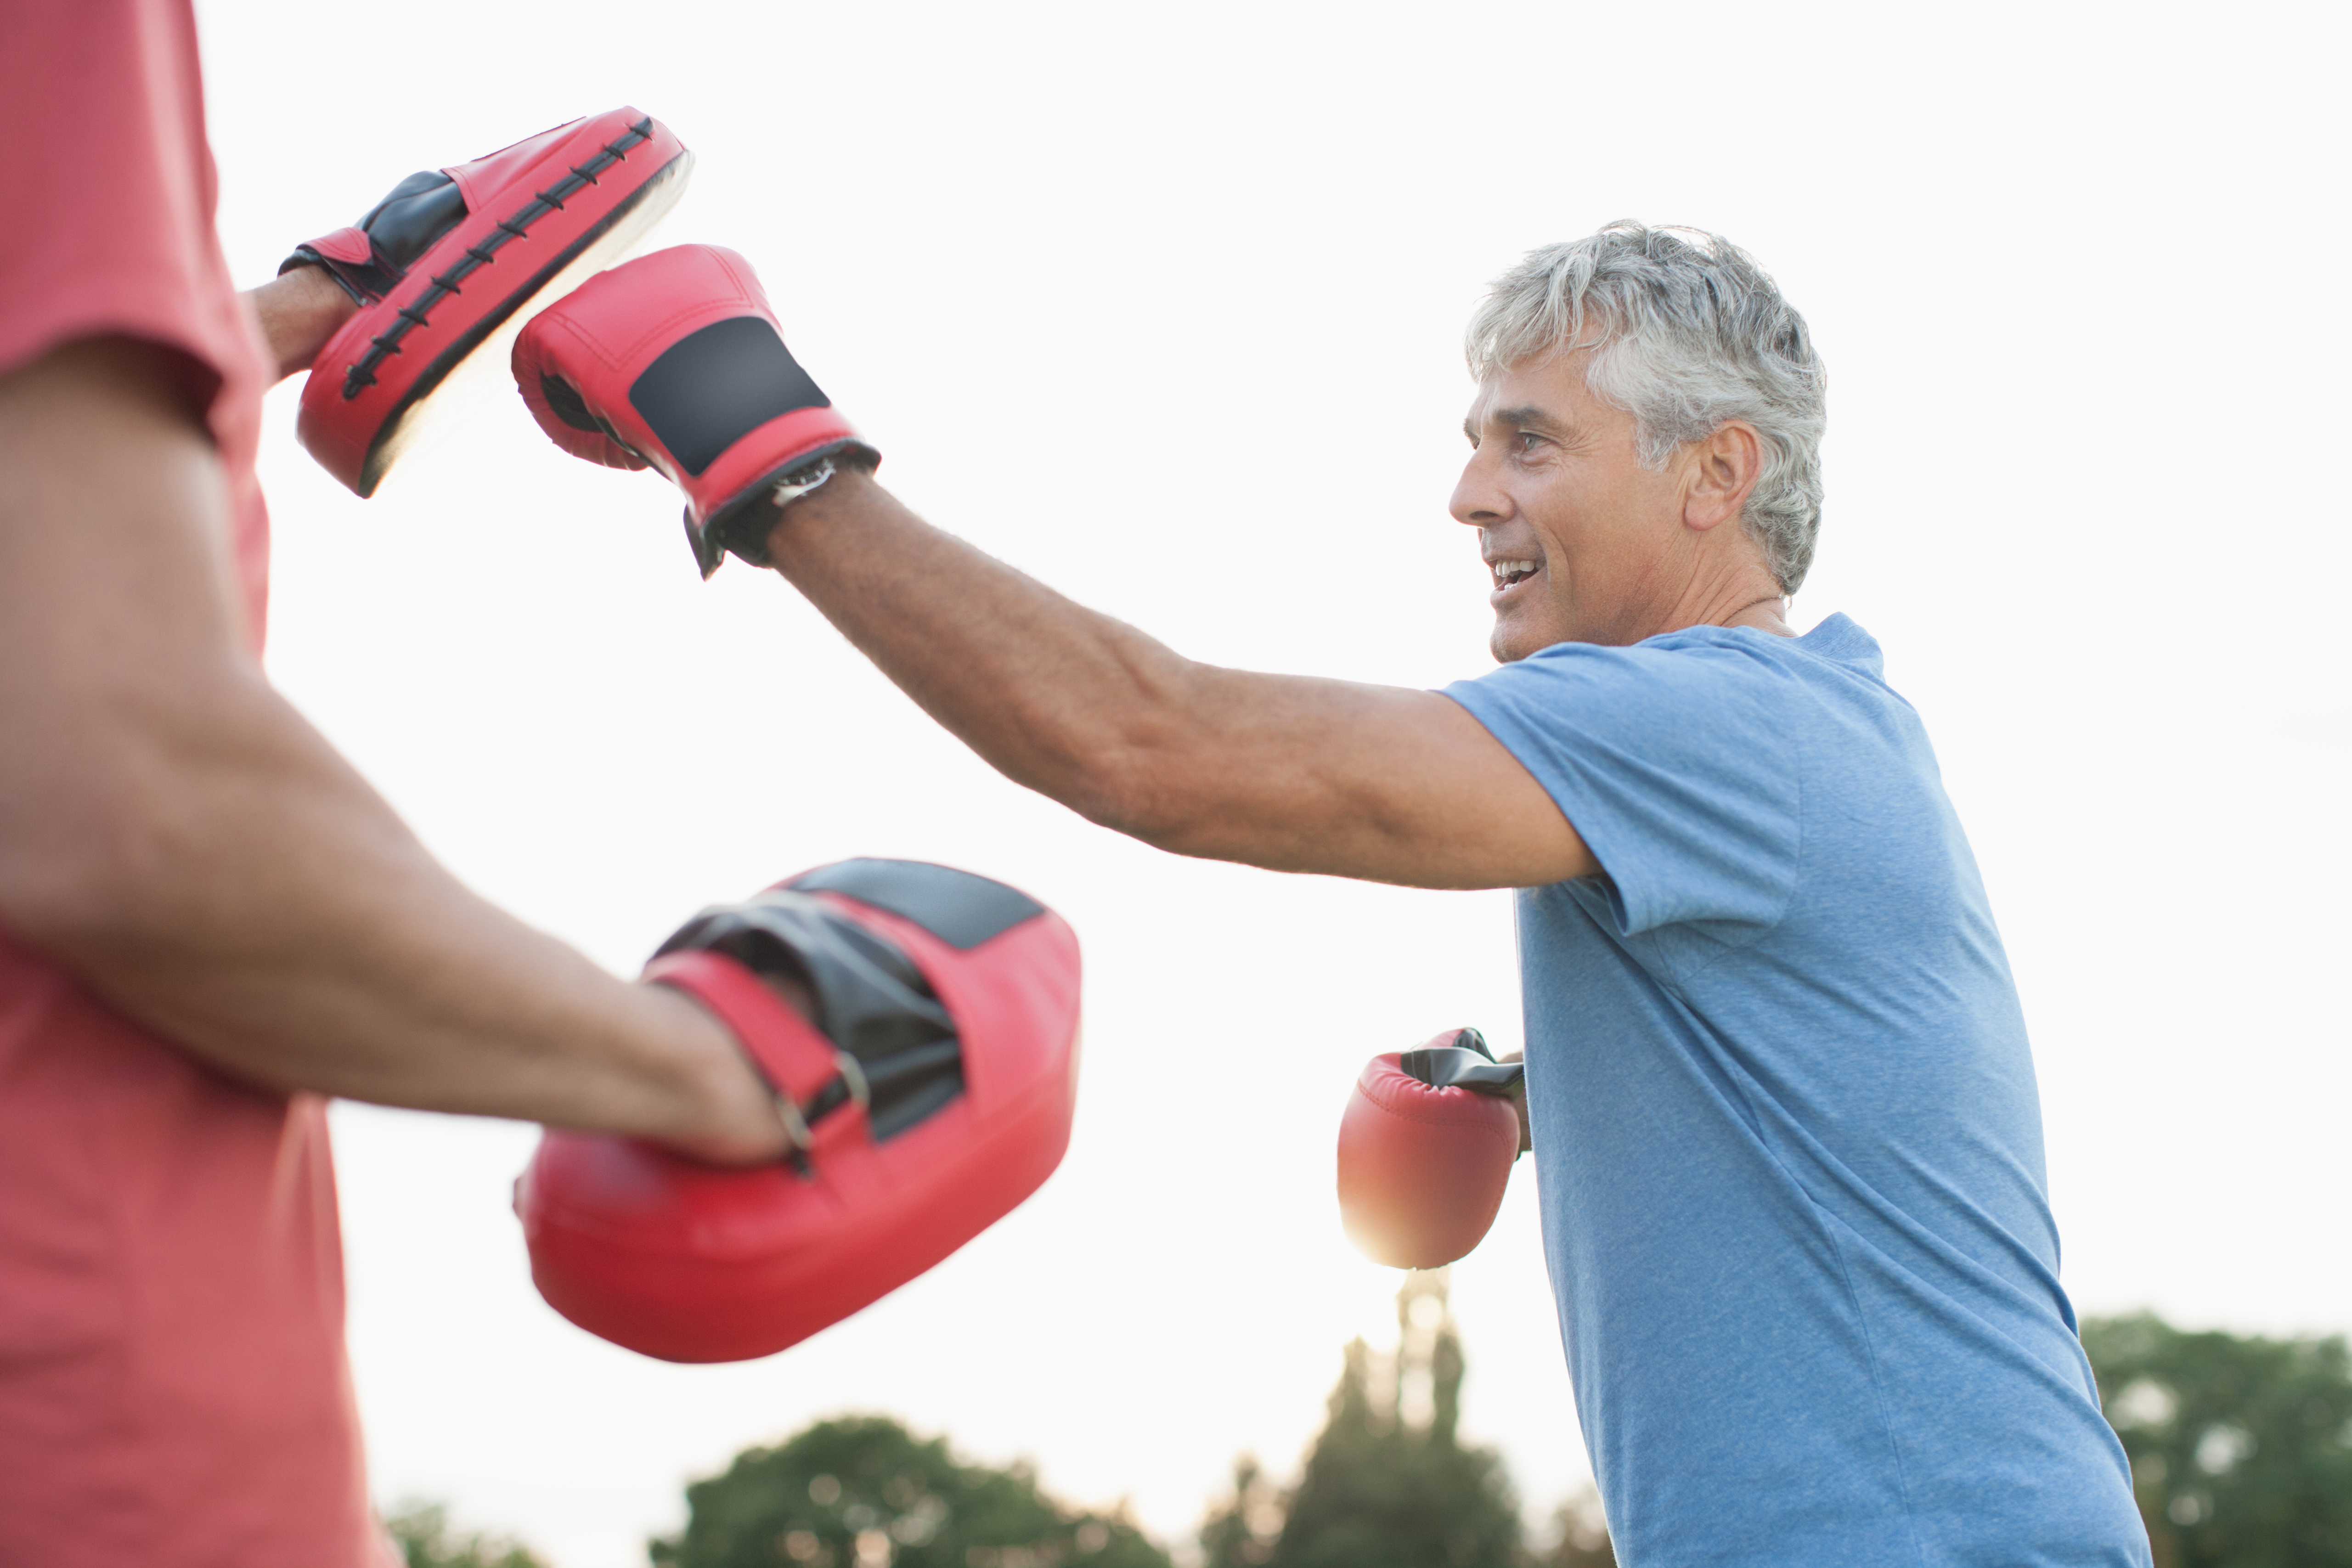 Uno de los deportes que más ha crecido como terapia para pacientes con Parkinson, llamativamente es el boxeo (Getty)